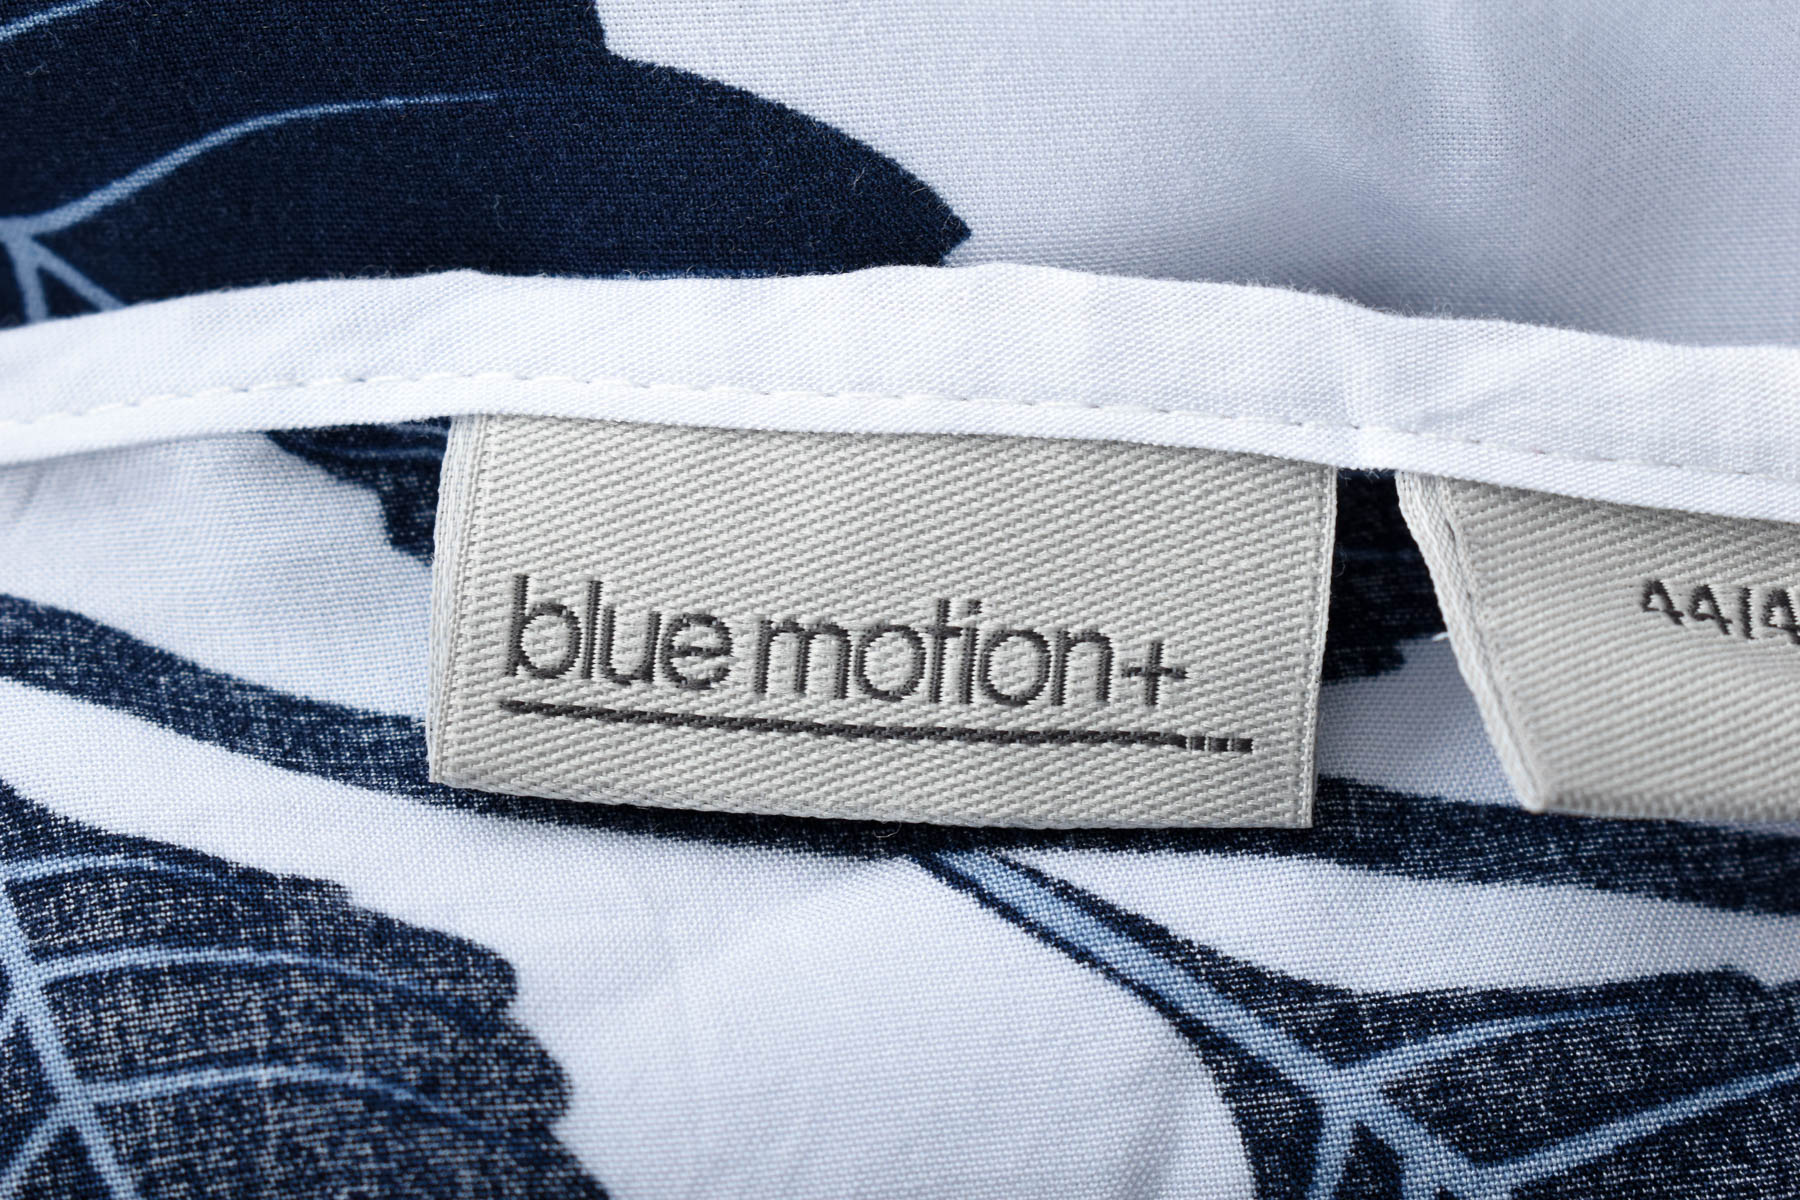 Women's shirt - Blue Motion - 2